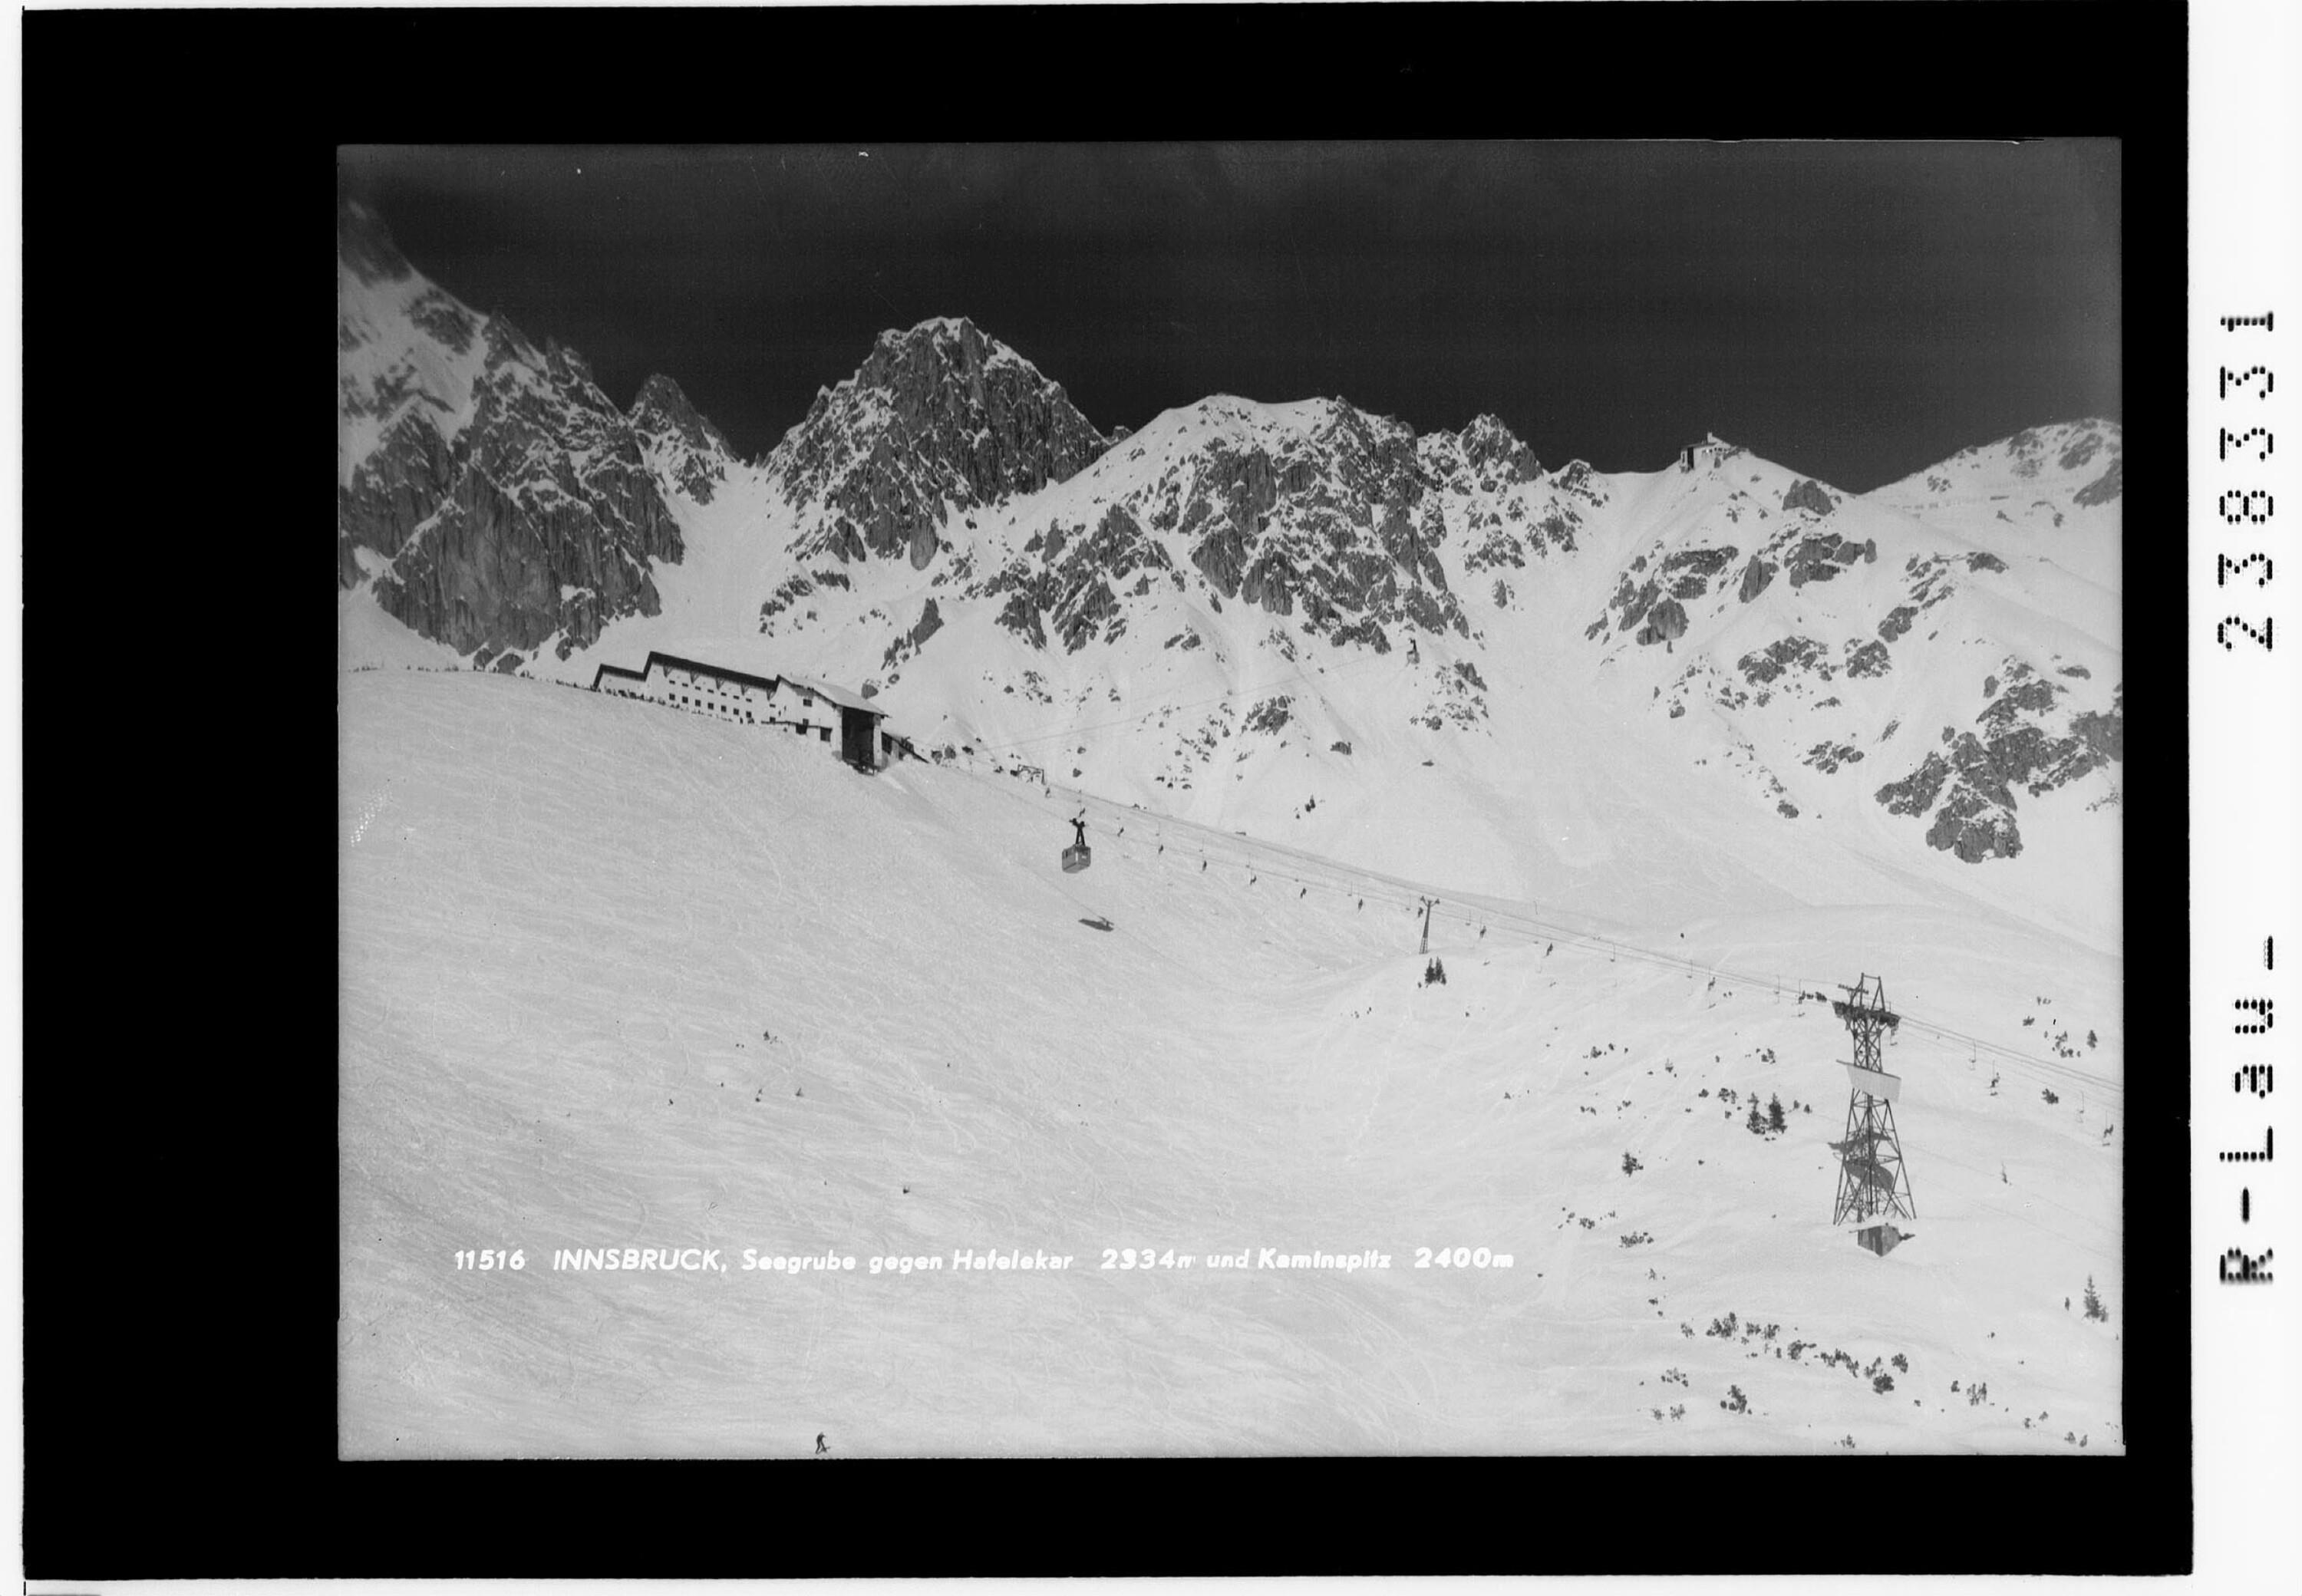 Innsbruck / Seegrube gegen Hafelekar 2334 m und Kaminspitz 2400 m></div>


    <hr>
    <div class=